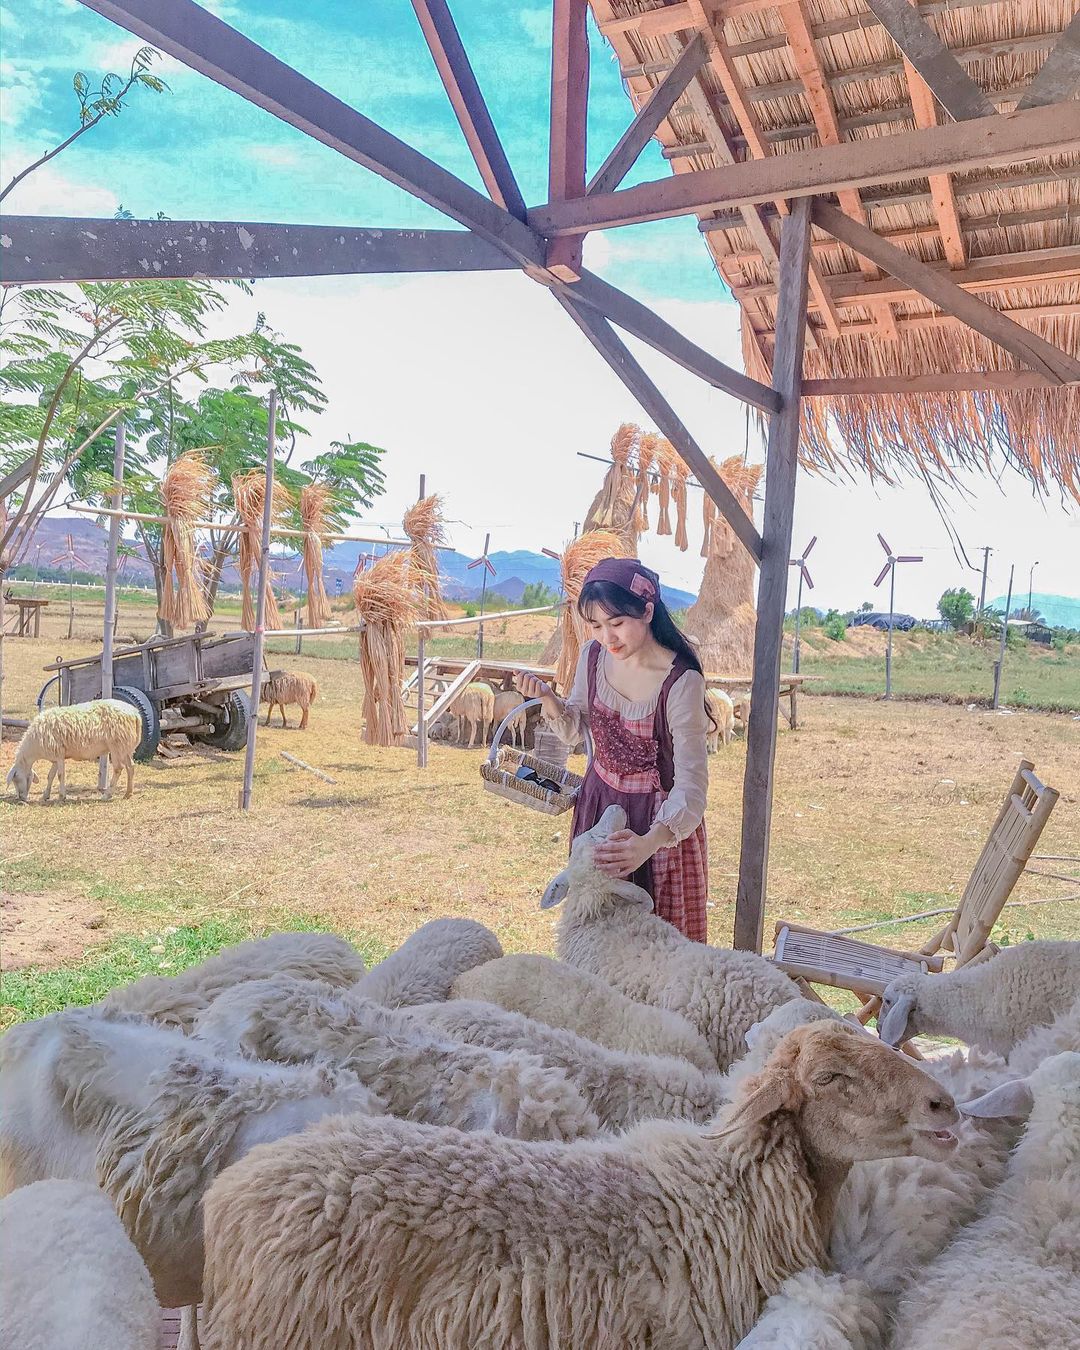 đồng cừu Suối Tiên Ninh Thuận 1